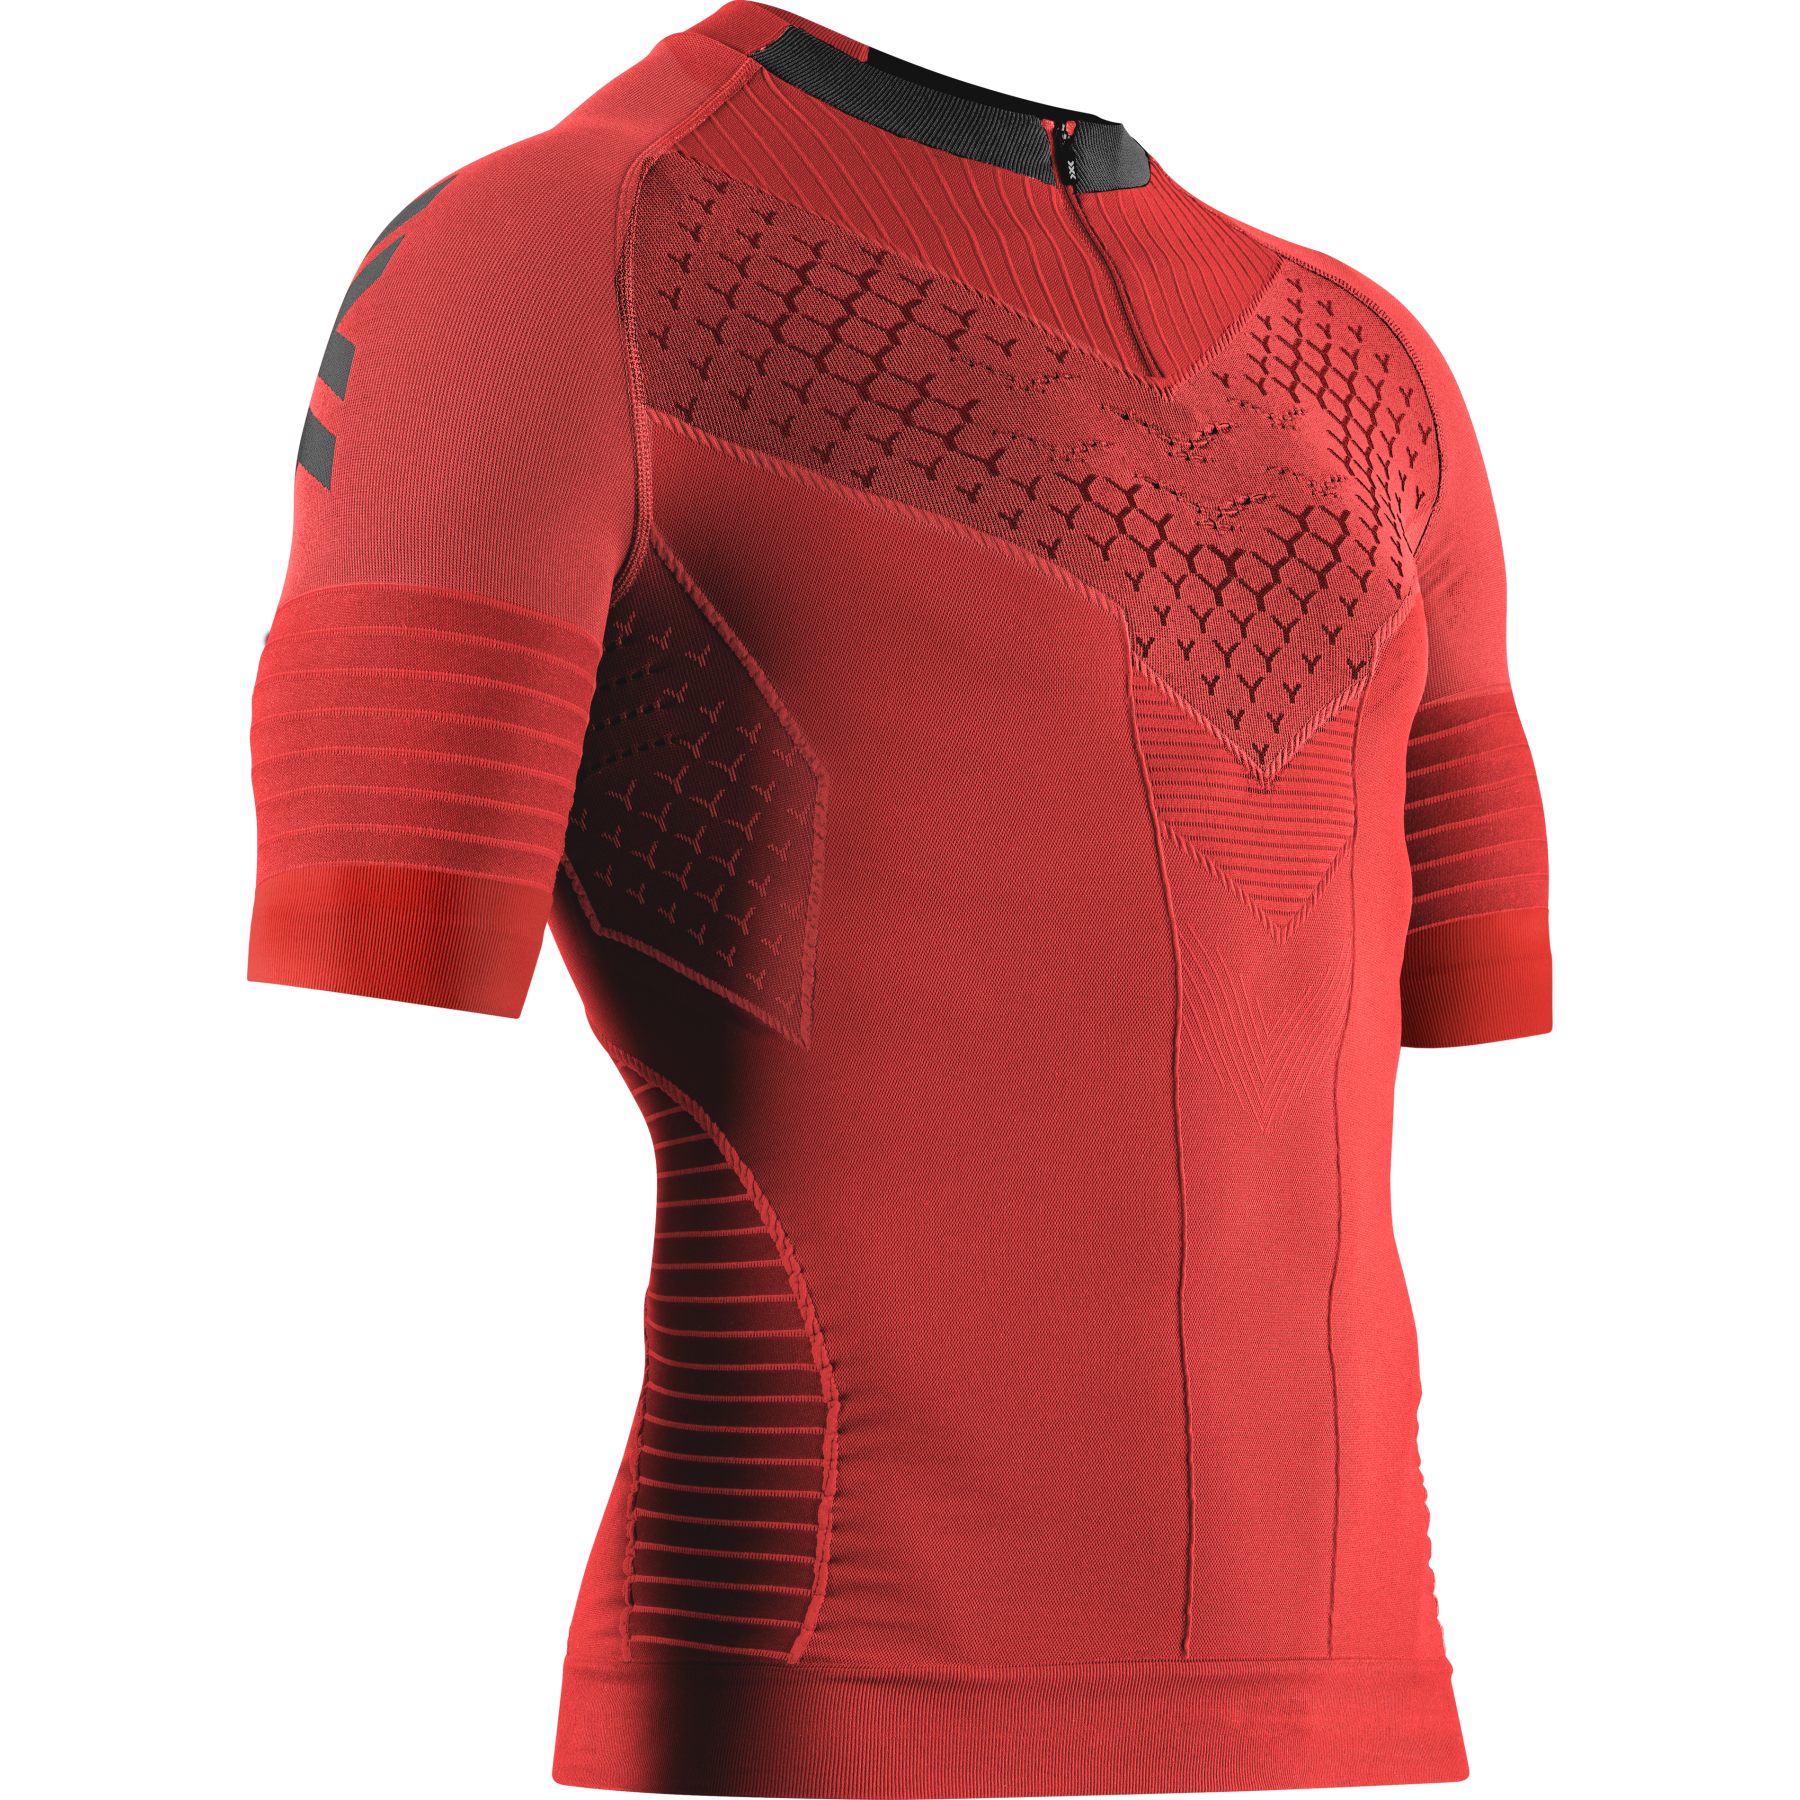 Produktbild von X-Bionic Twyce Race Laufshirt Herren - rot/schwarz